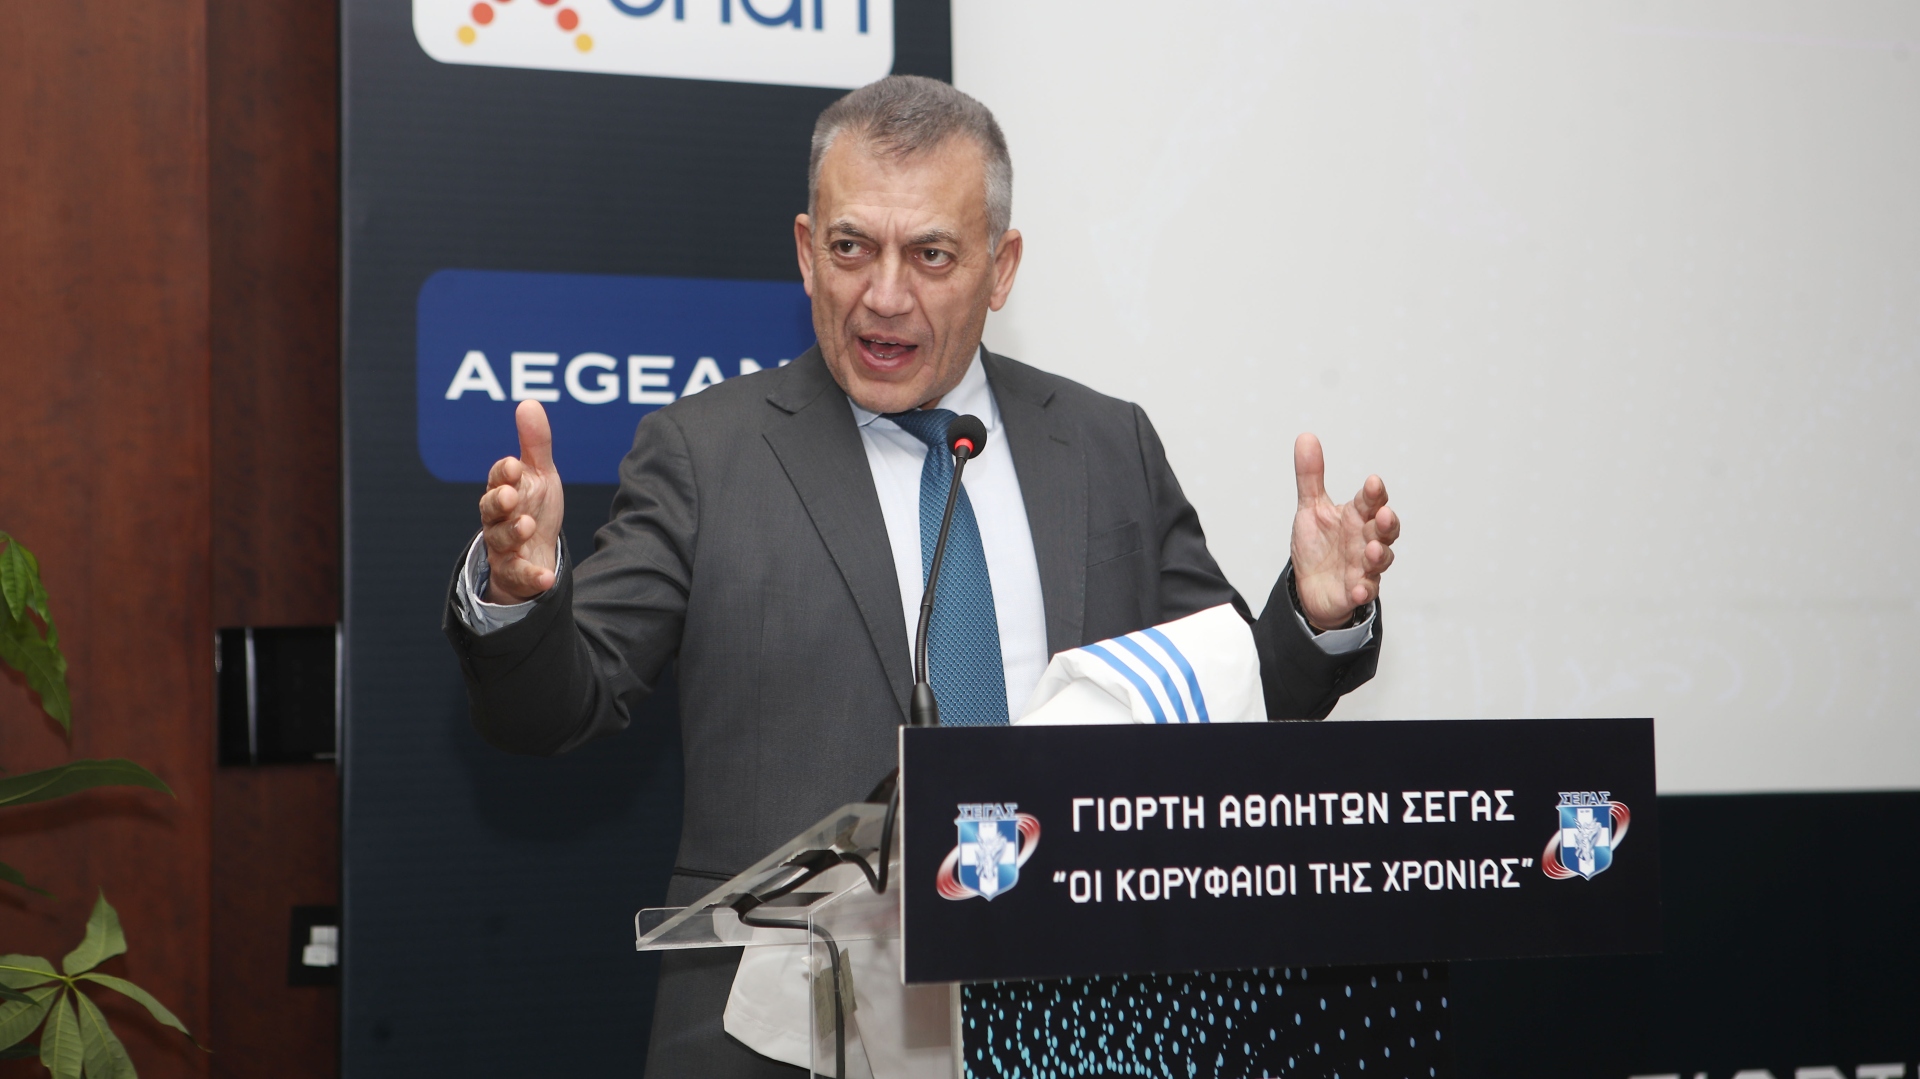 Ο Αναπληρωτής Υπουργός Αθλητισμού ανέφερε θα ήθελε να δει τις δύο ελληνικές ομάδες στο τελικό Conference League